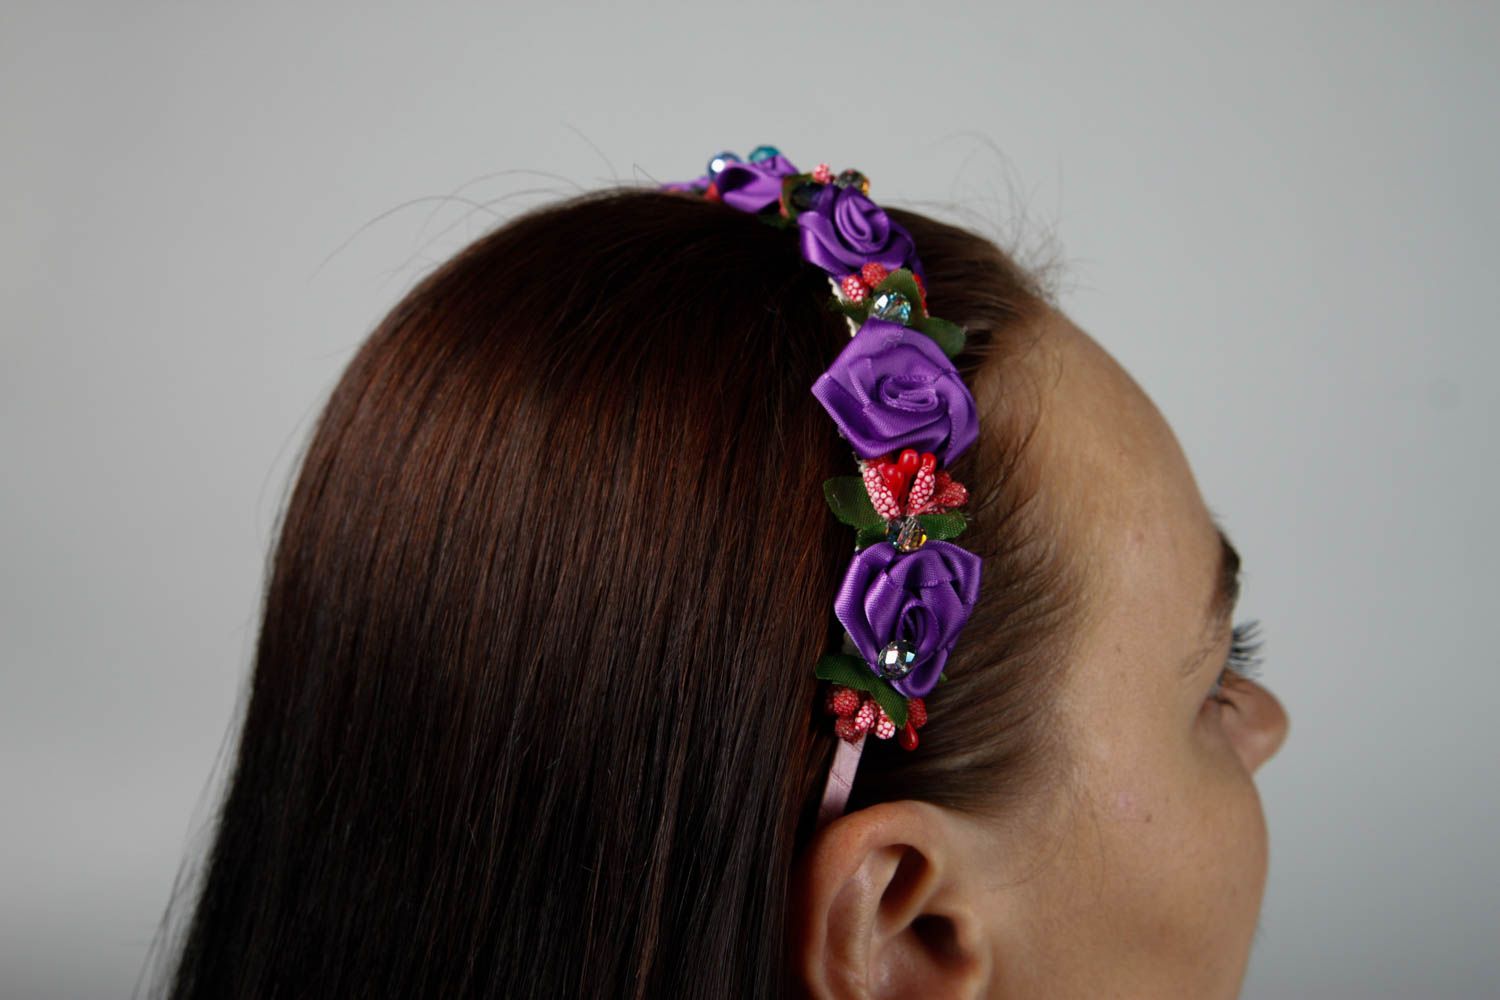 Аксессуар для волос ручной работы цветочный обруч на голову женский аксессуар фото 2